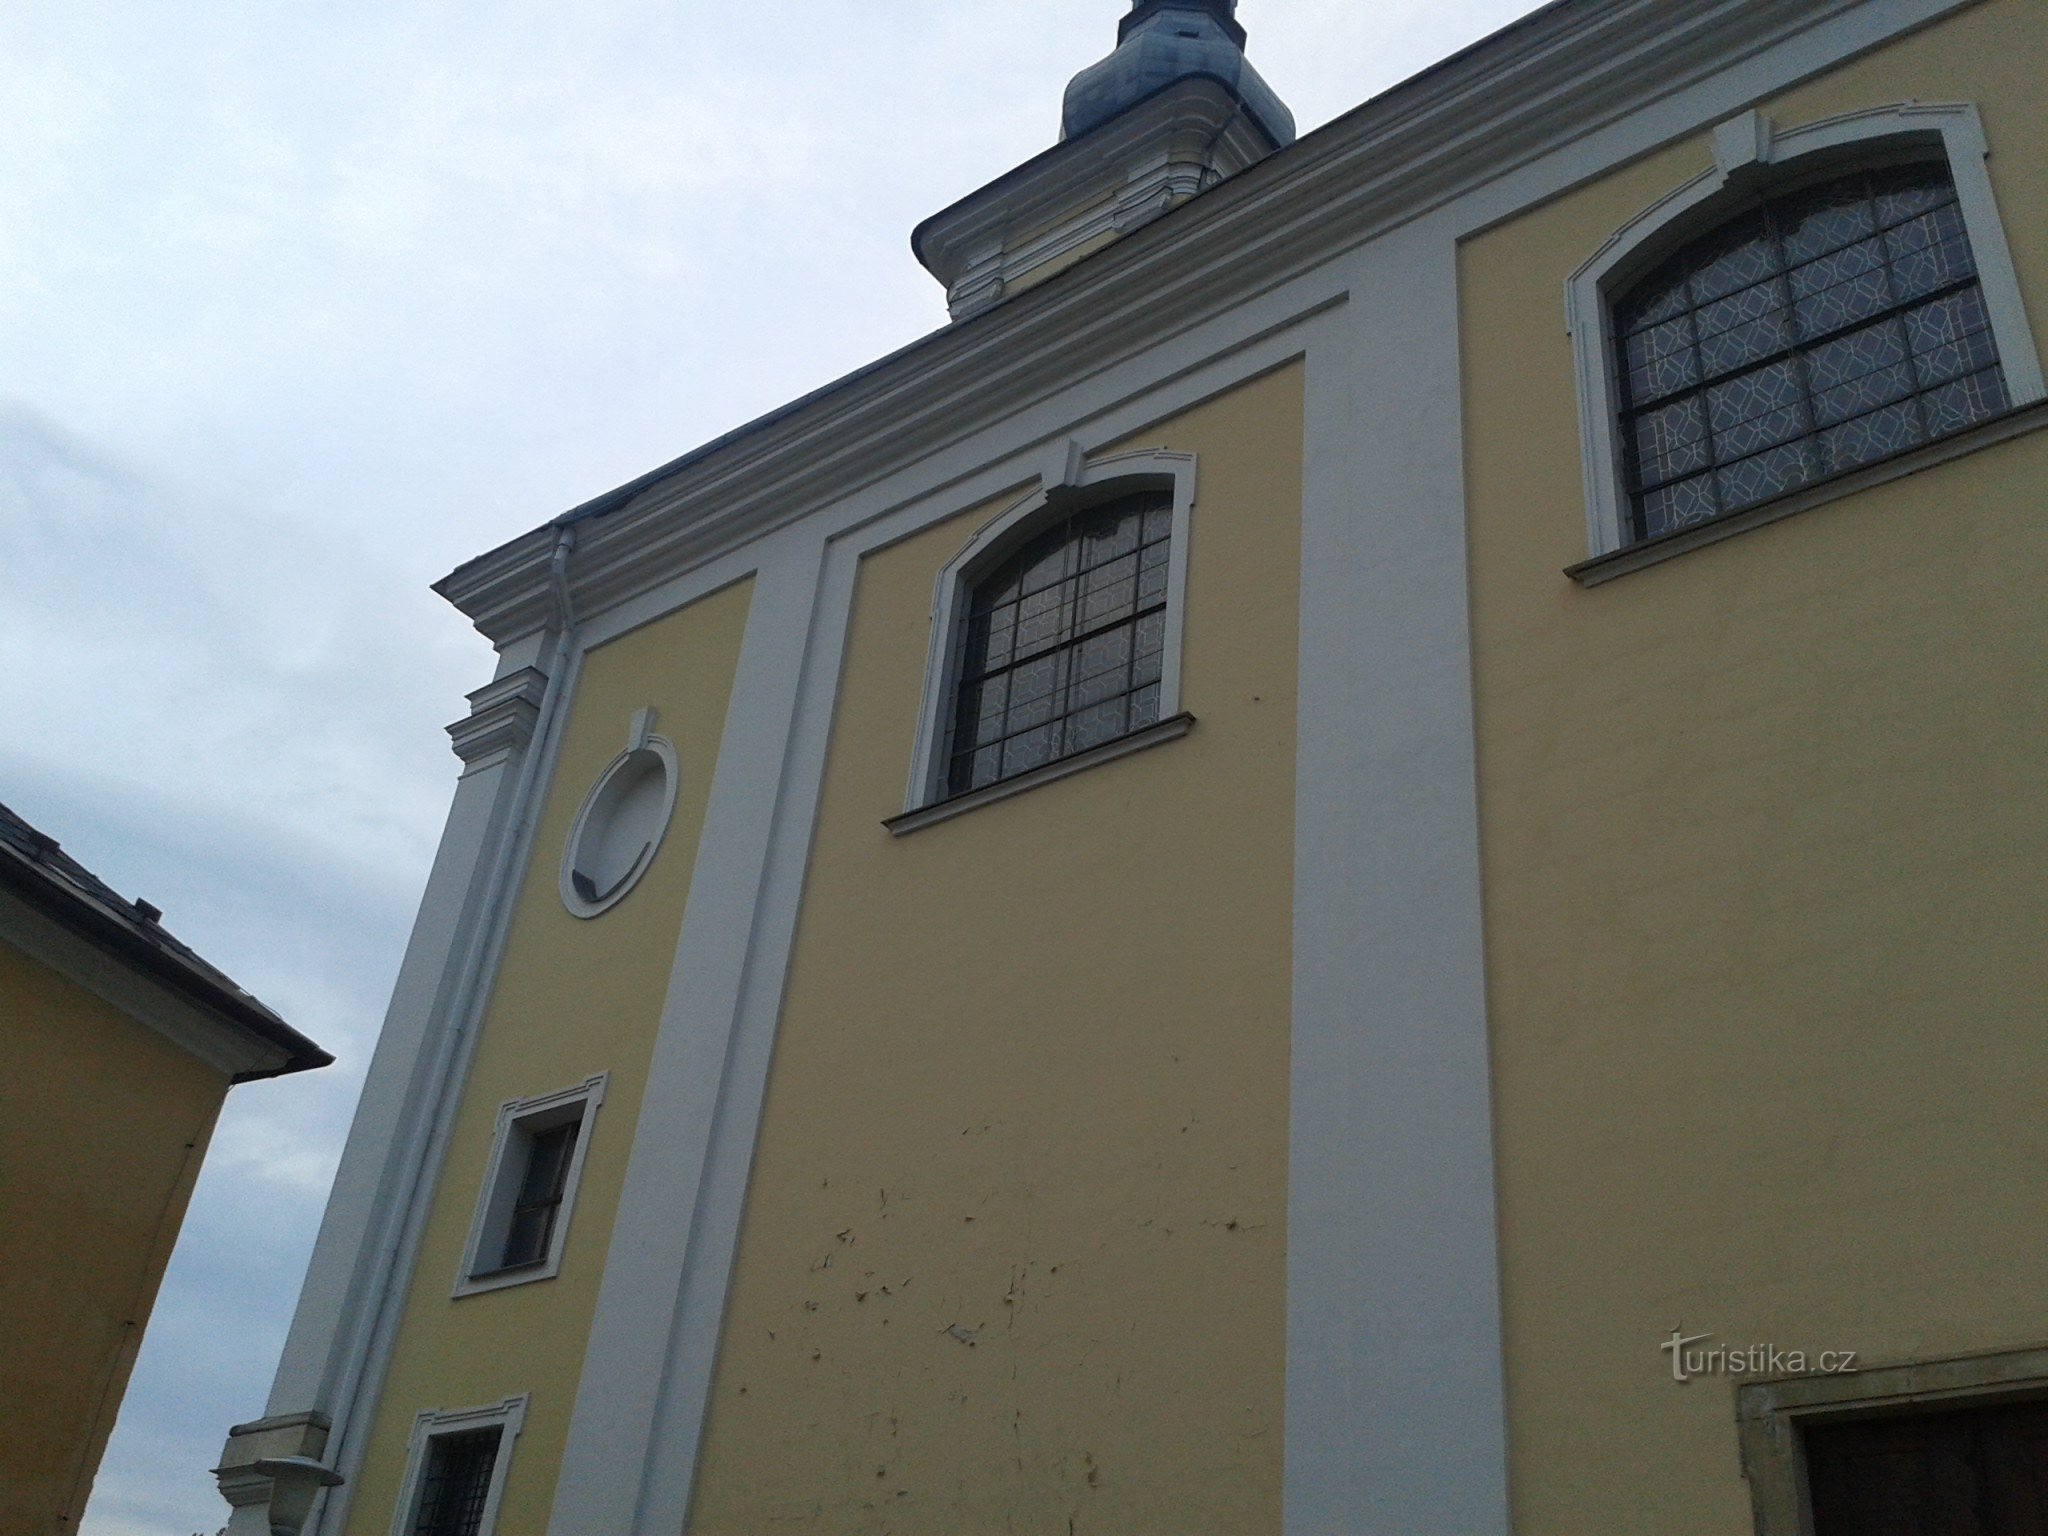 Zábřeh (na Mor.) - Chiesa di San Bartolomeo dall'esterno e dall'interno (aggiunta 19.3.16) + parrocchia